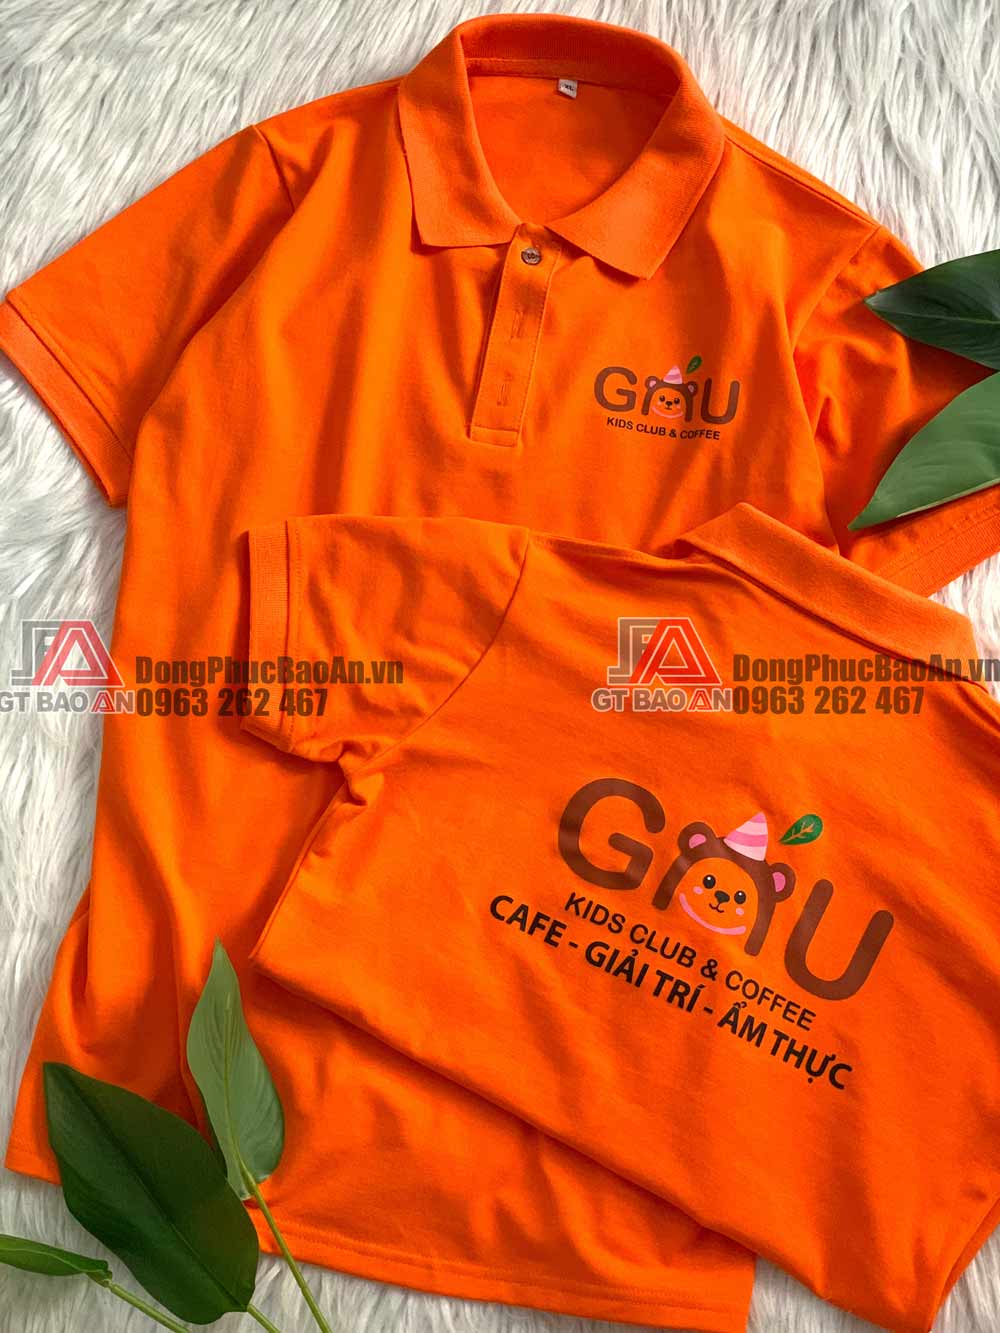 Xưởng may áo đồng phục giá rẻ có in thêu logo theo yêu cầu TPHCM quận Bình Tân